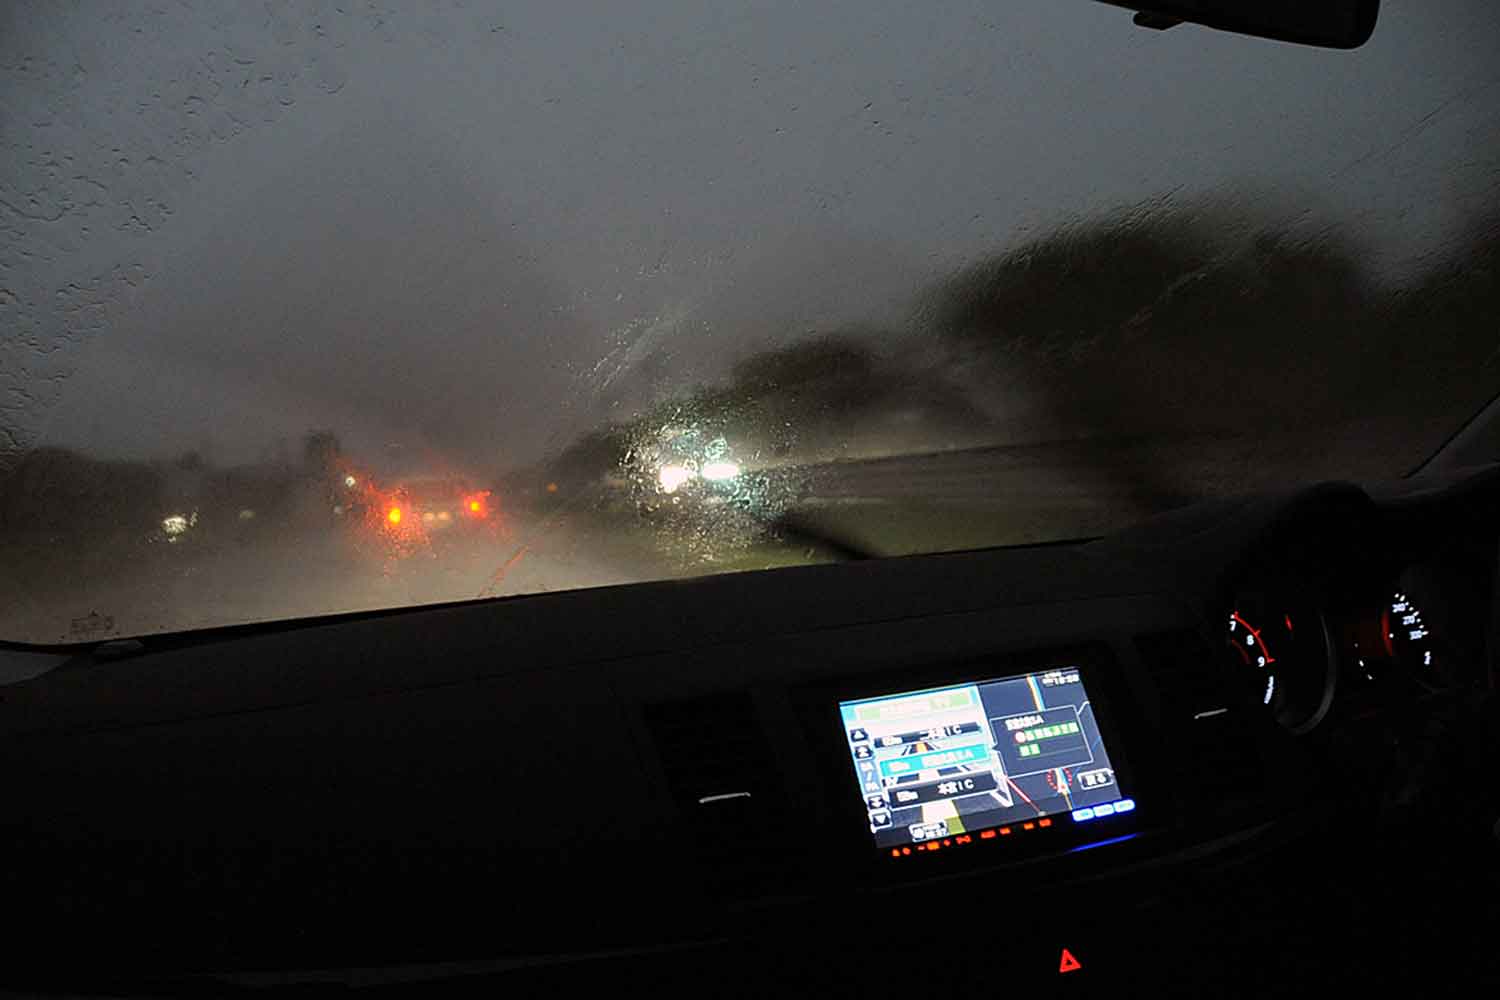 ゲリラ豪雨で前方視界が良くない状況